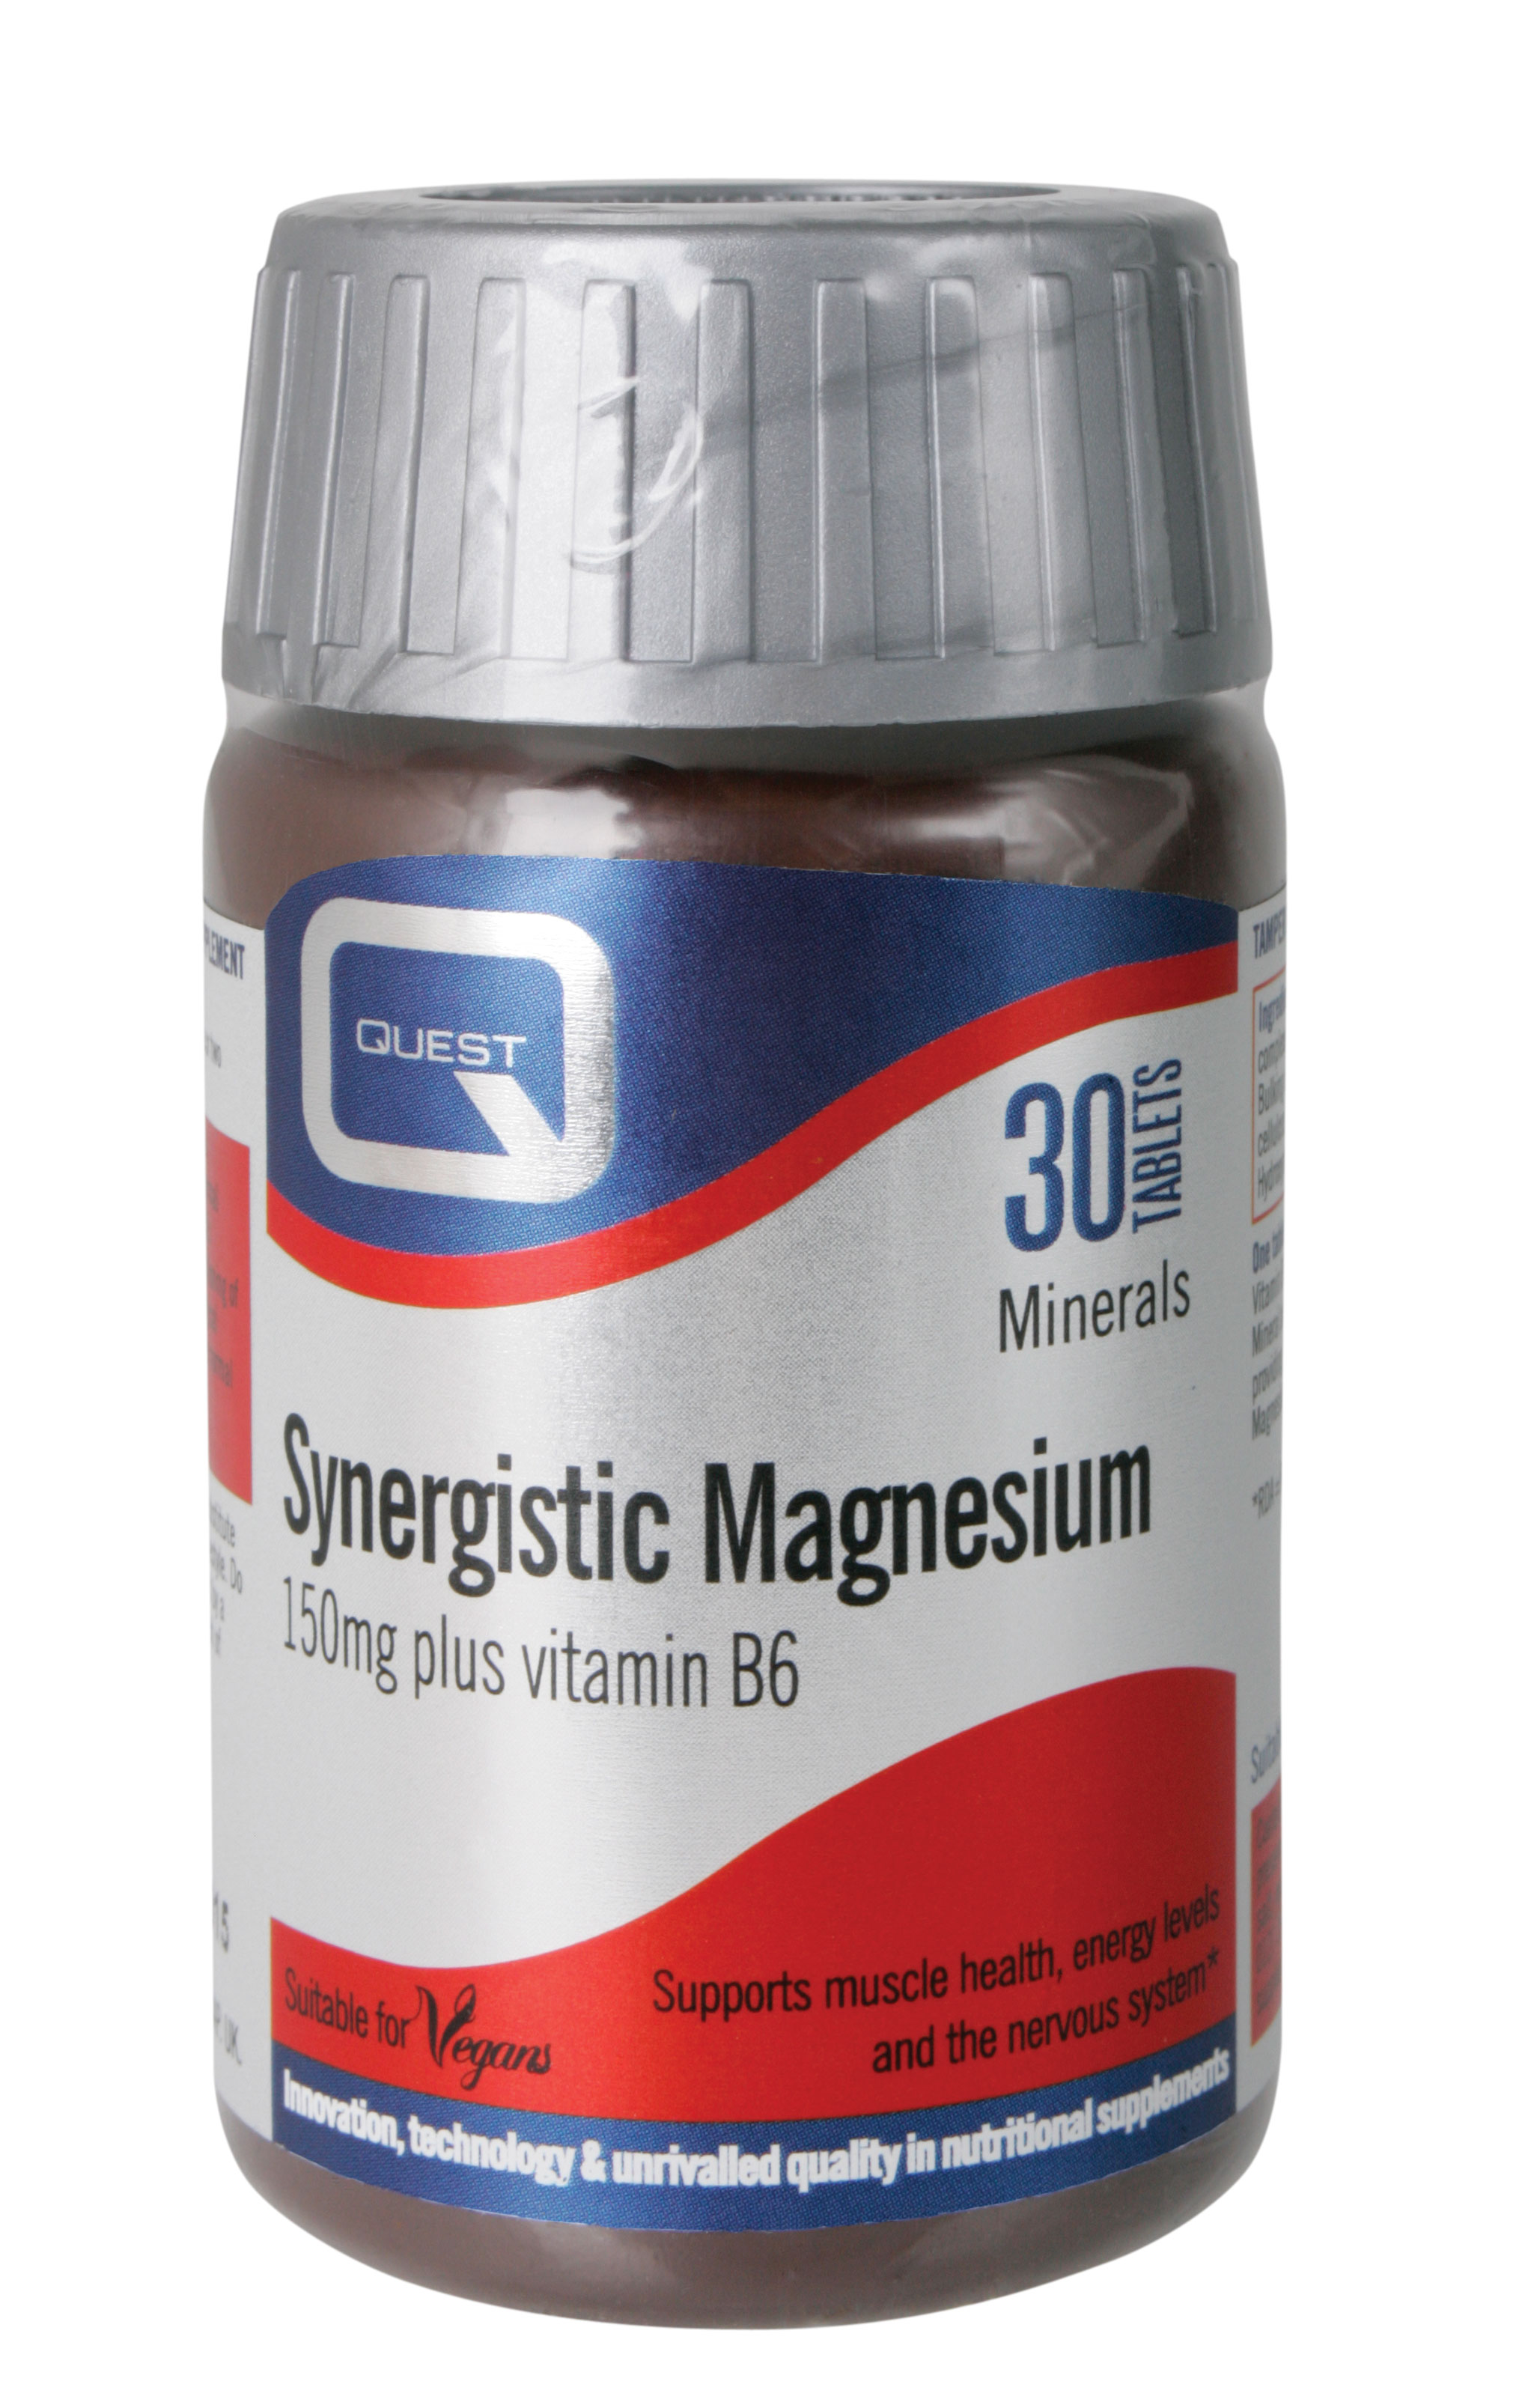 Synergistic Magnesium